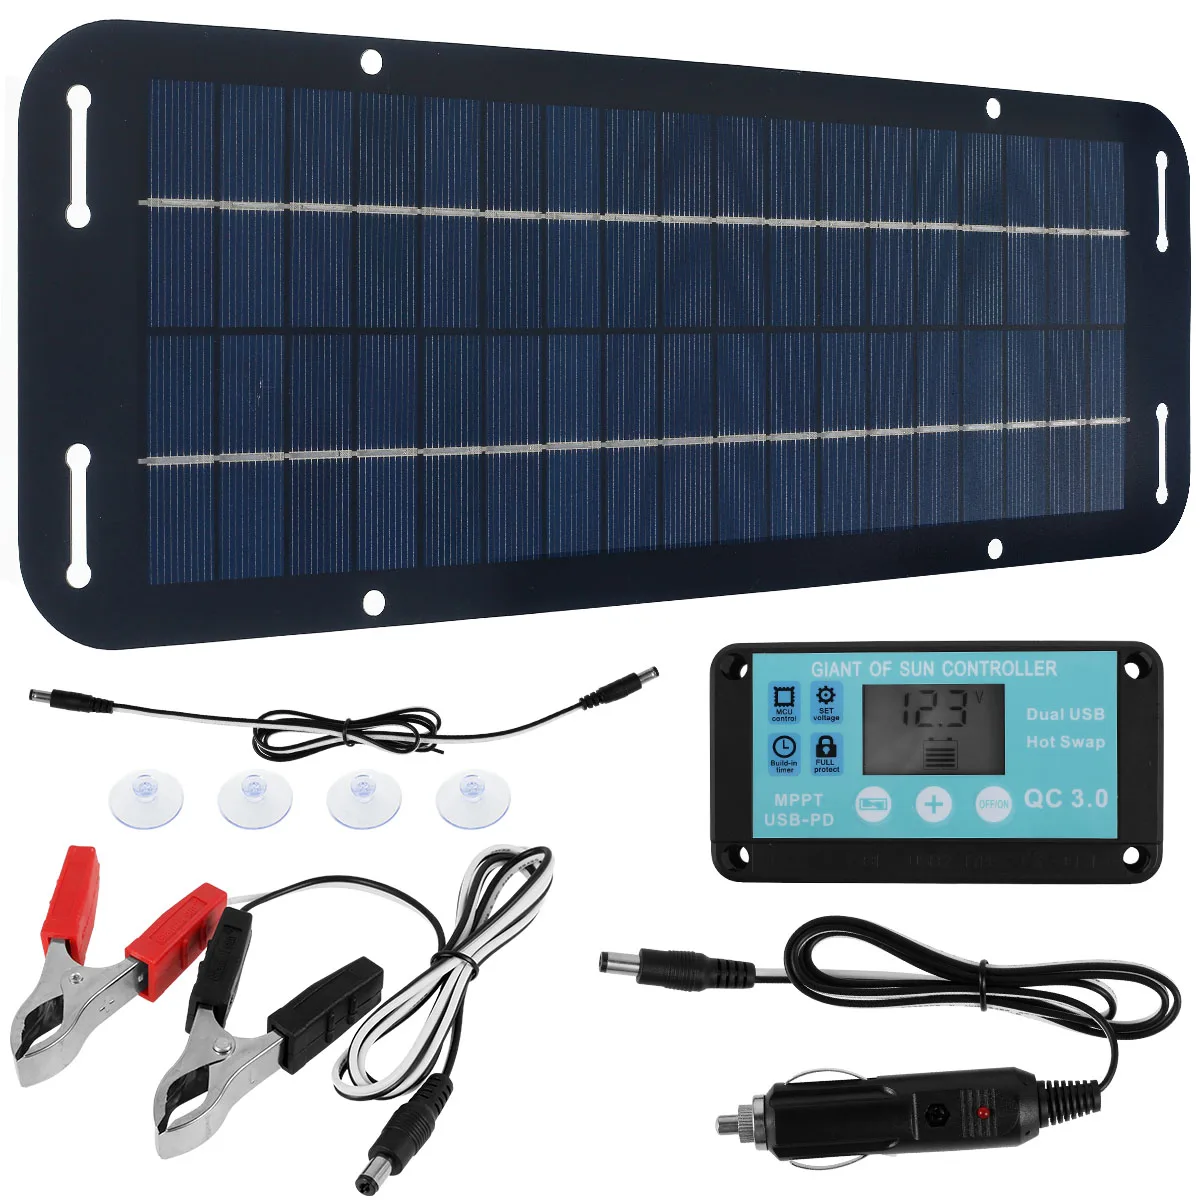 30W solární panel souprava IP65 dokonaný solární trickle nabíječka USB energie přenosné s 4 sání kelímky outdoorové pro pestrost z vozidel